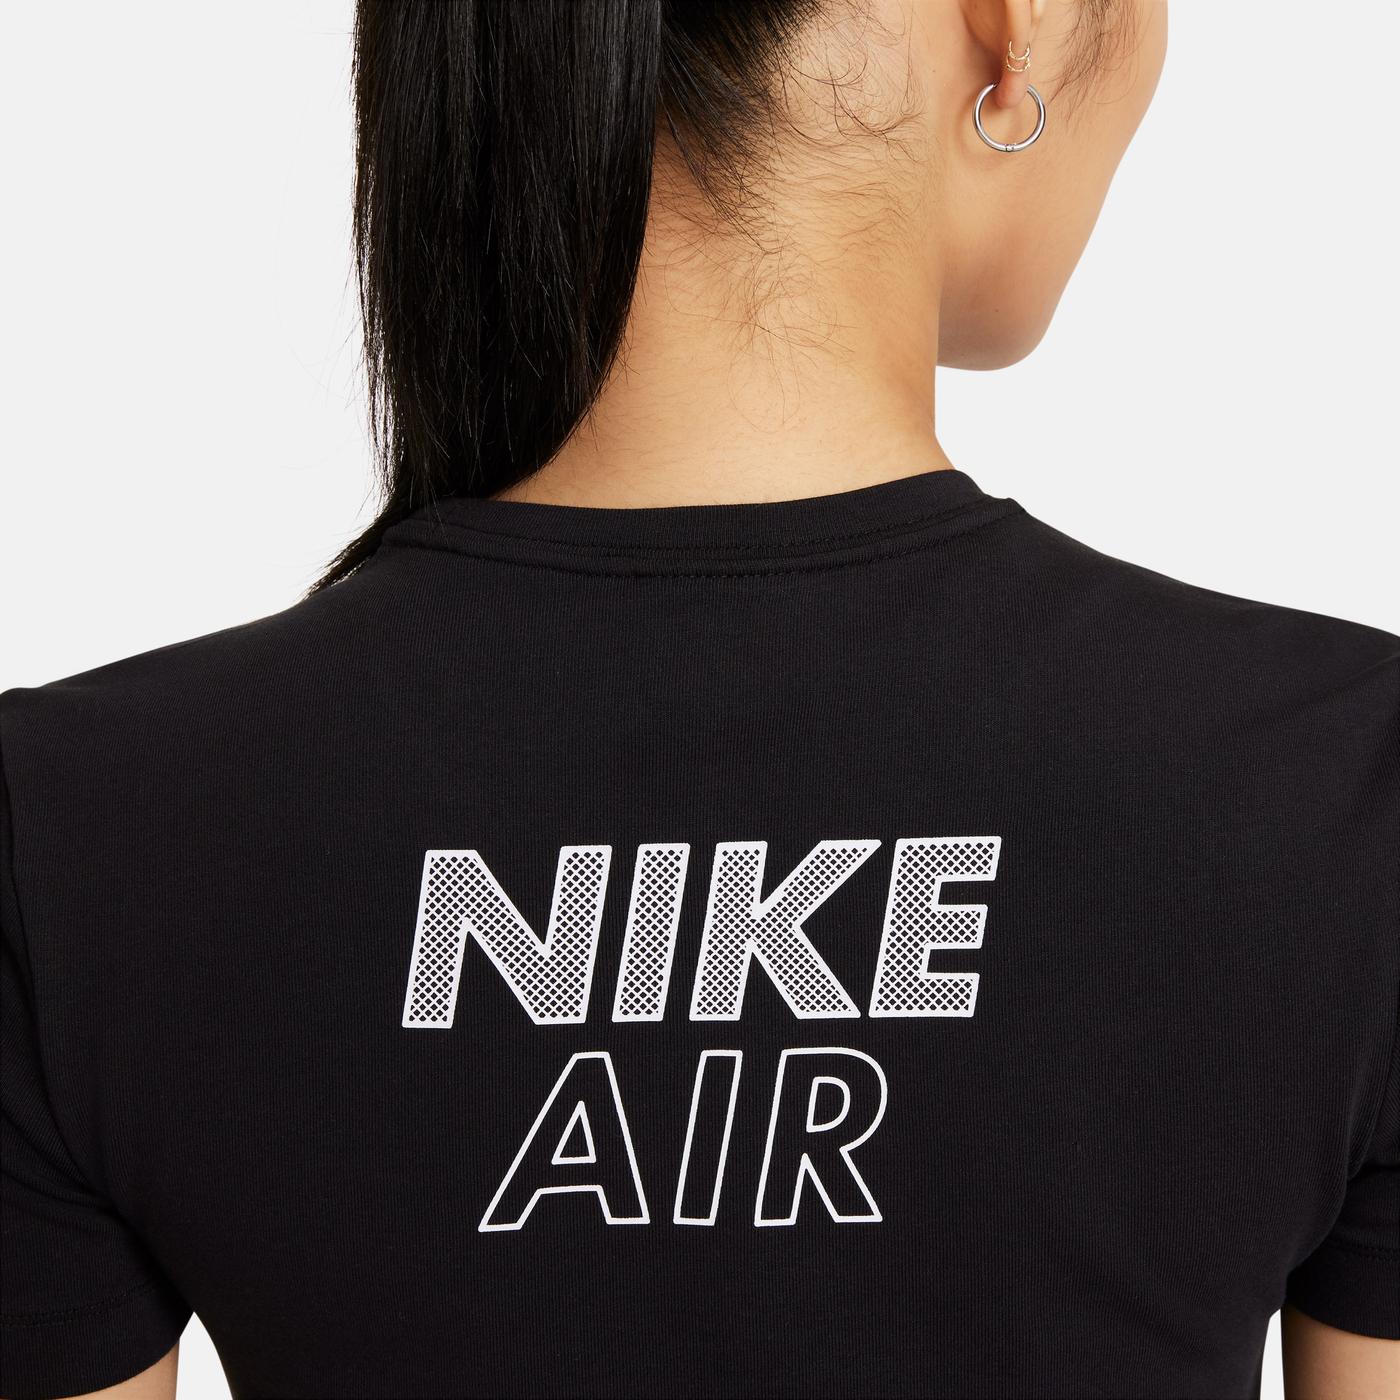 Nike Kadın Siyah T-Shirt